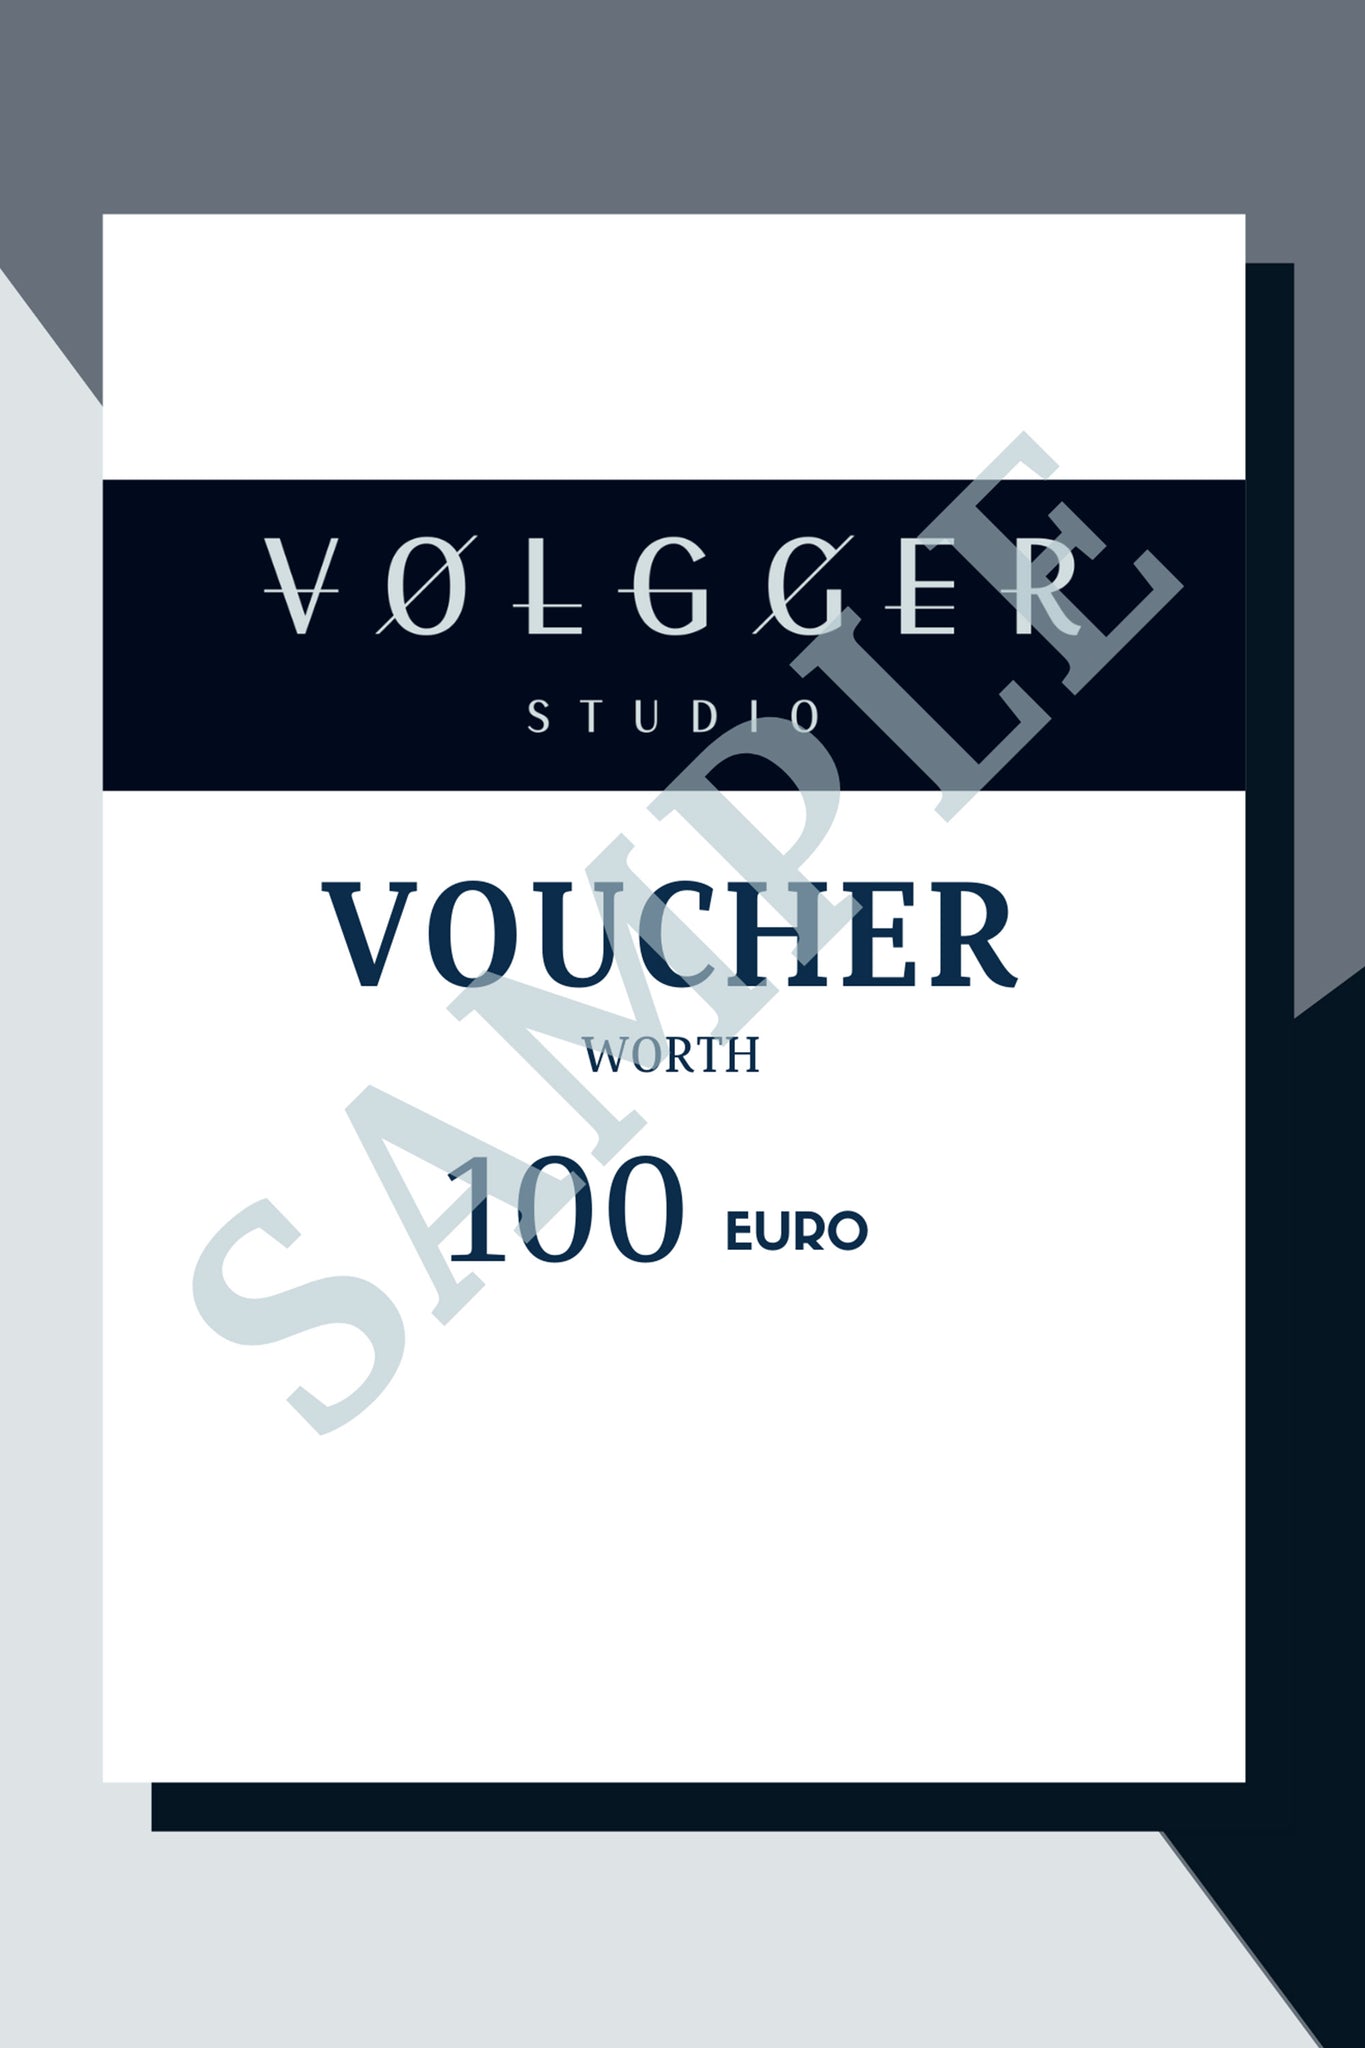 VOLGGER Studio Voucher